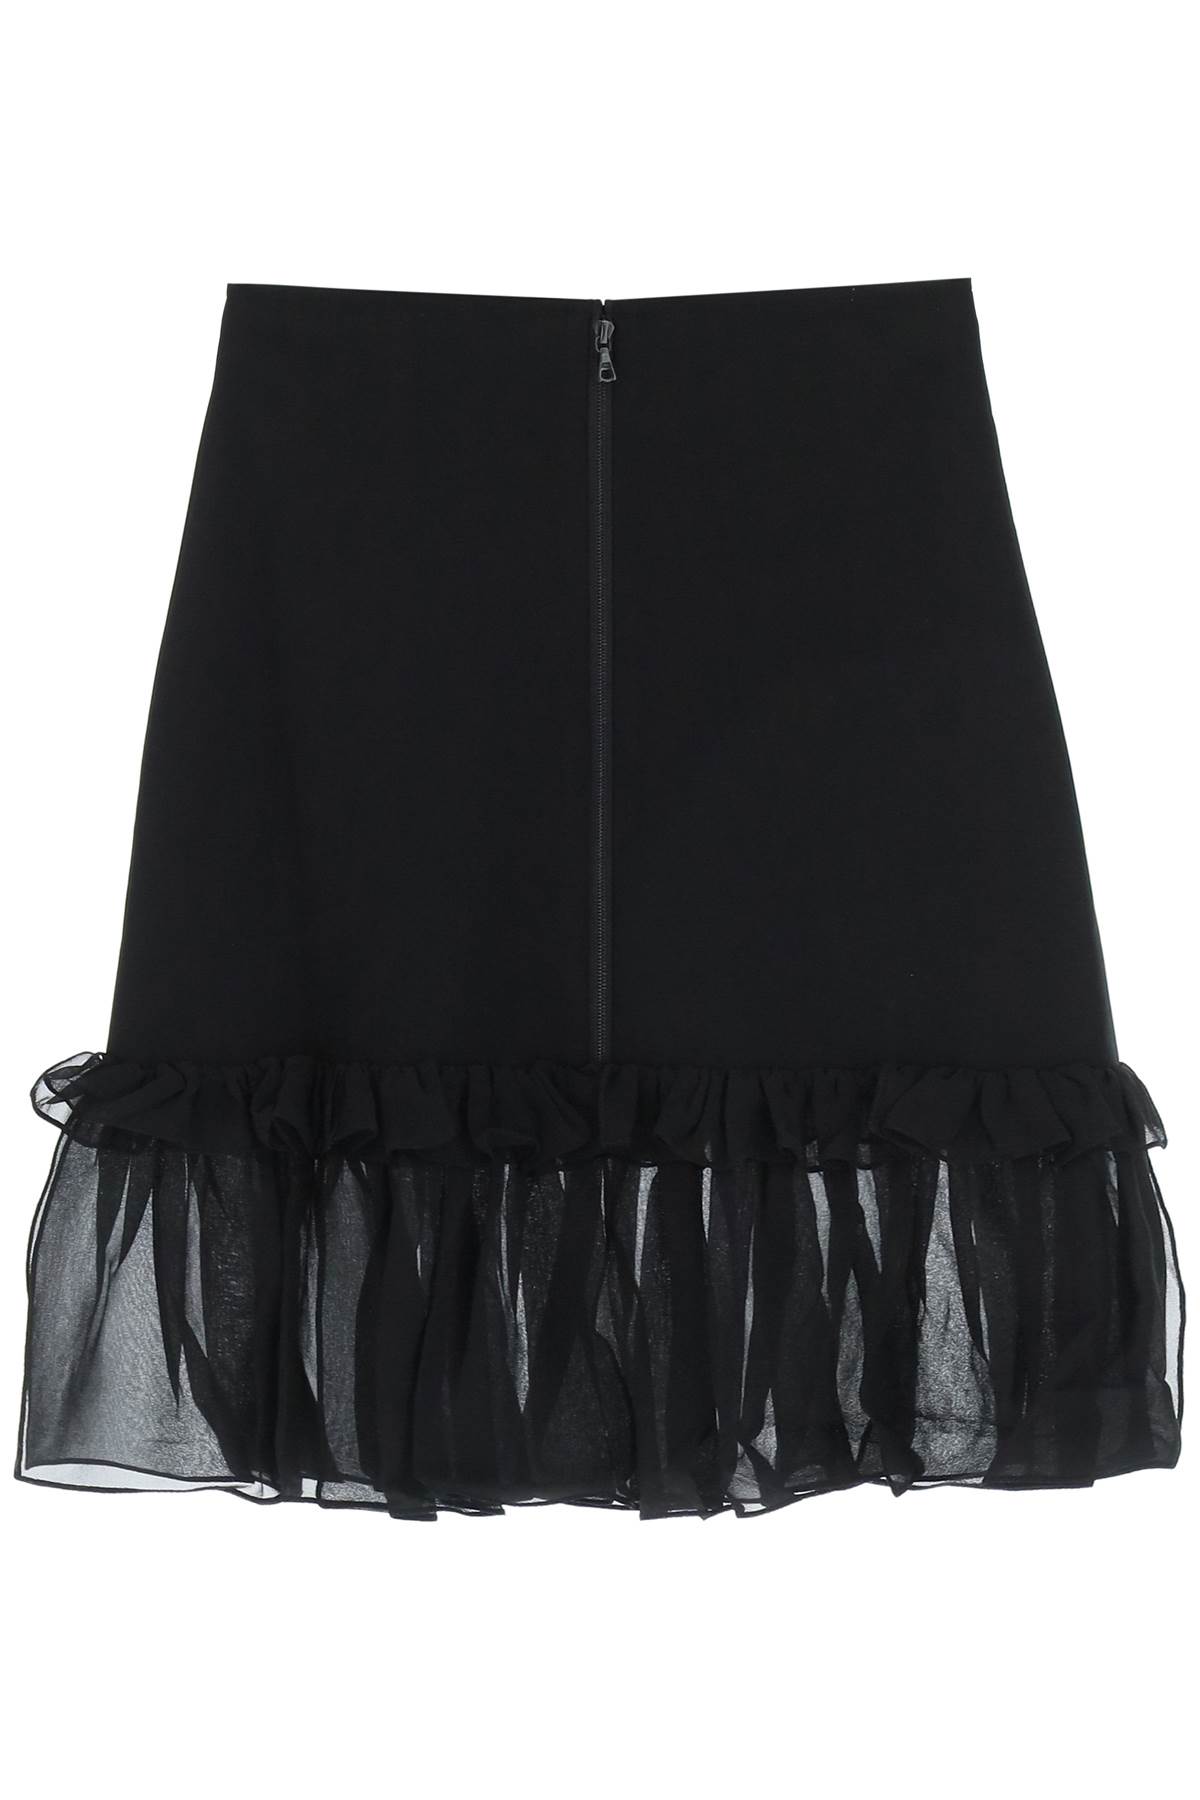 Nensi Dojaka Jersey And Chiffon Mini Skirt